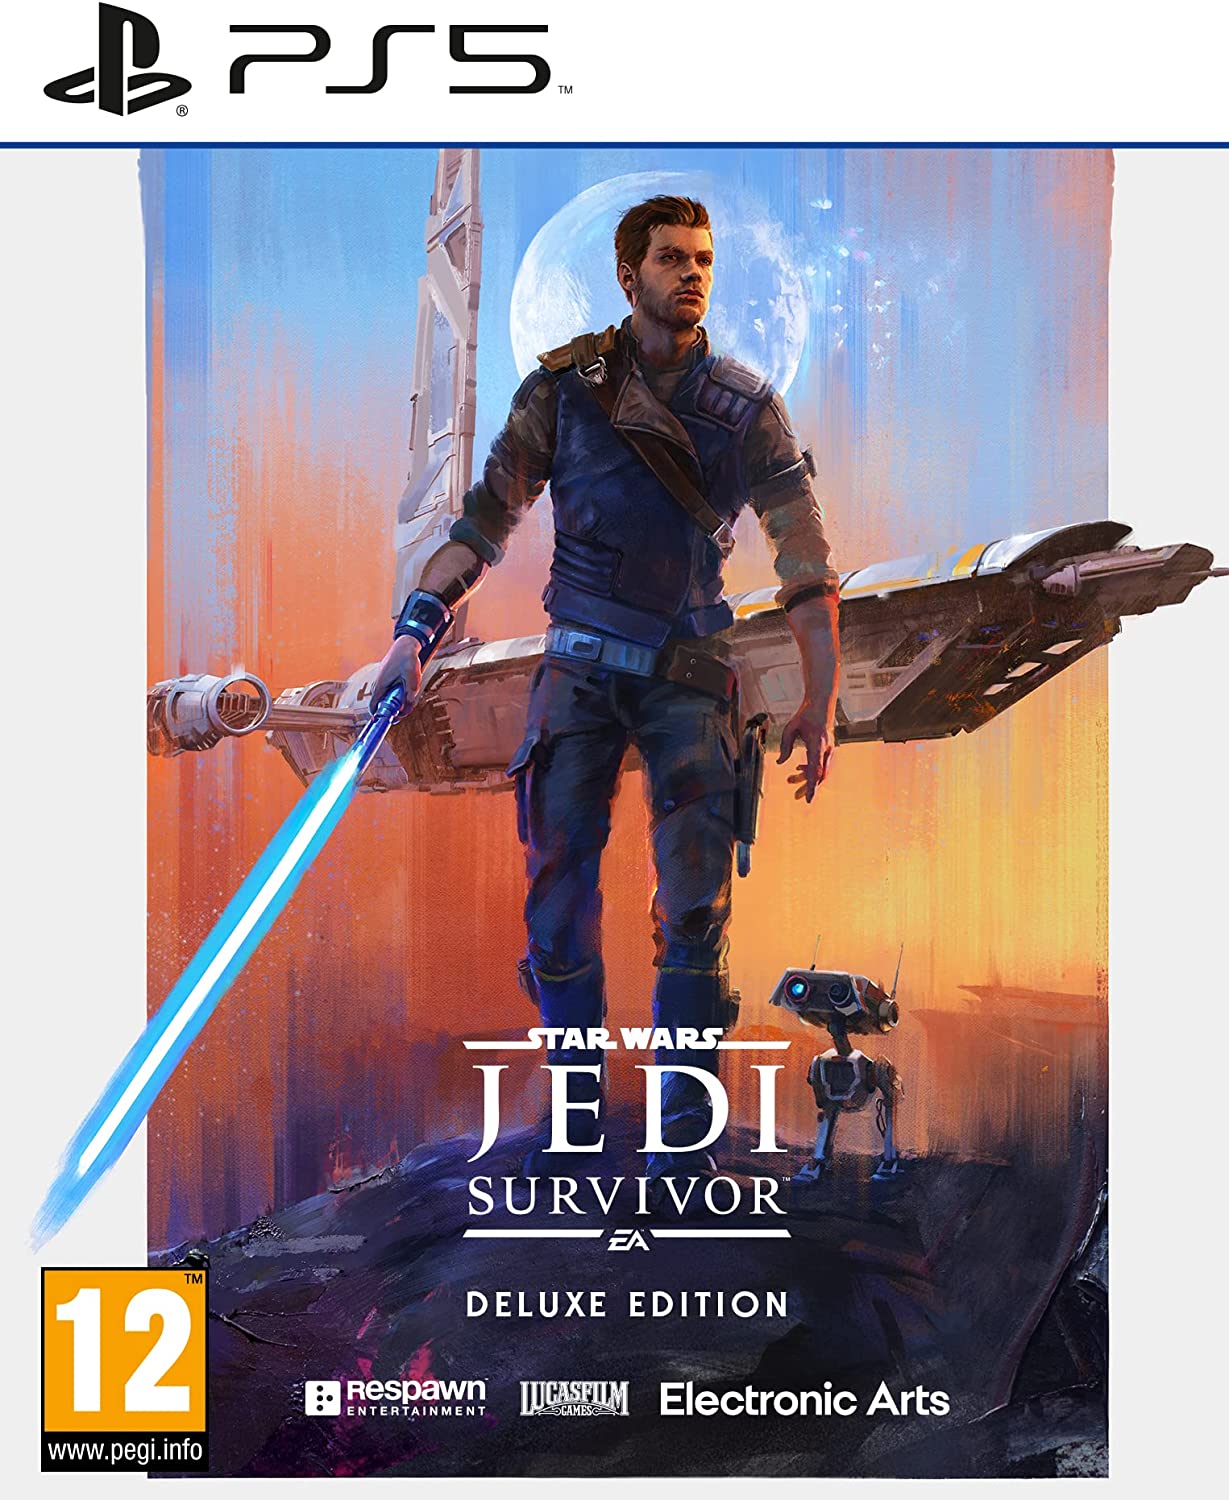 Star Wars Jedi Survivor (Deluxe Edition)